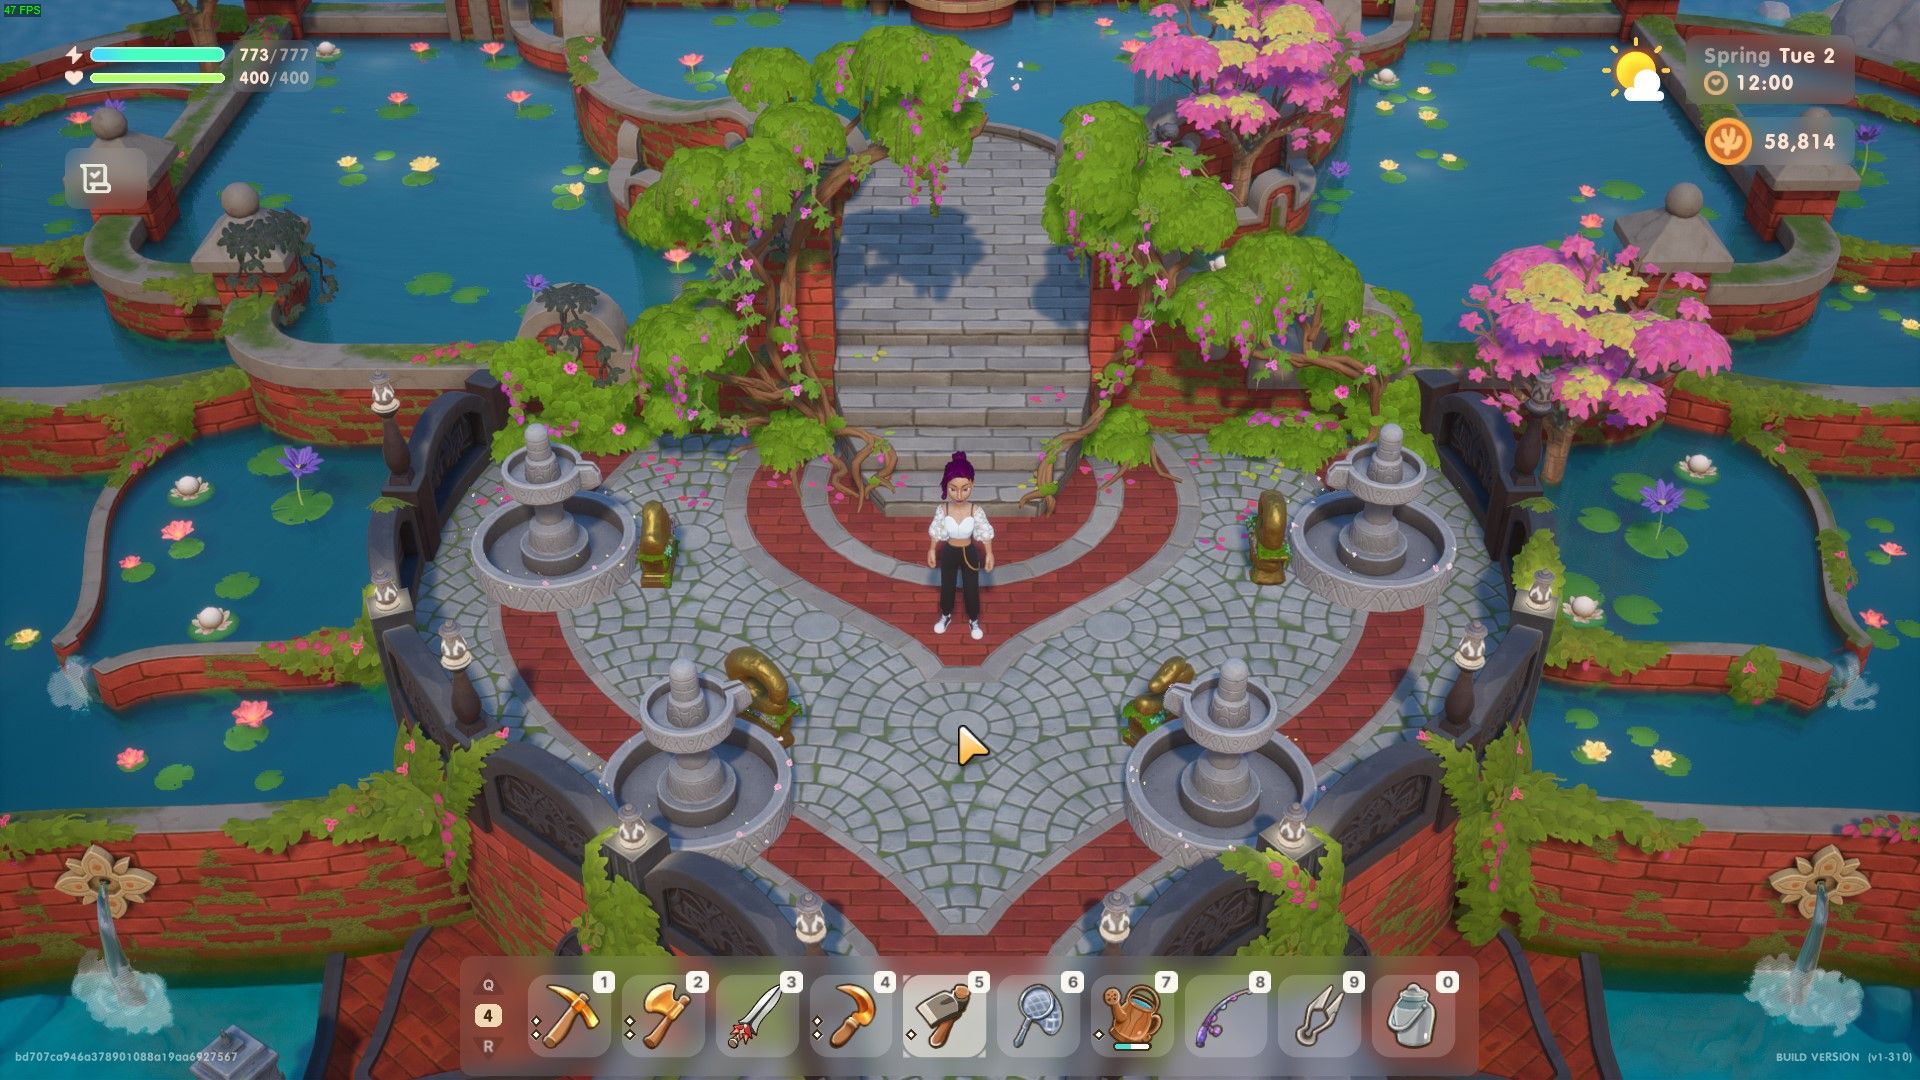 Коралловый остров: изображение персонажа игрока, стоящего в храме у озера.